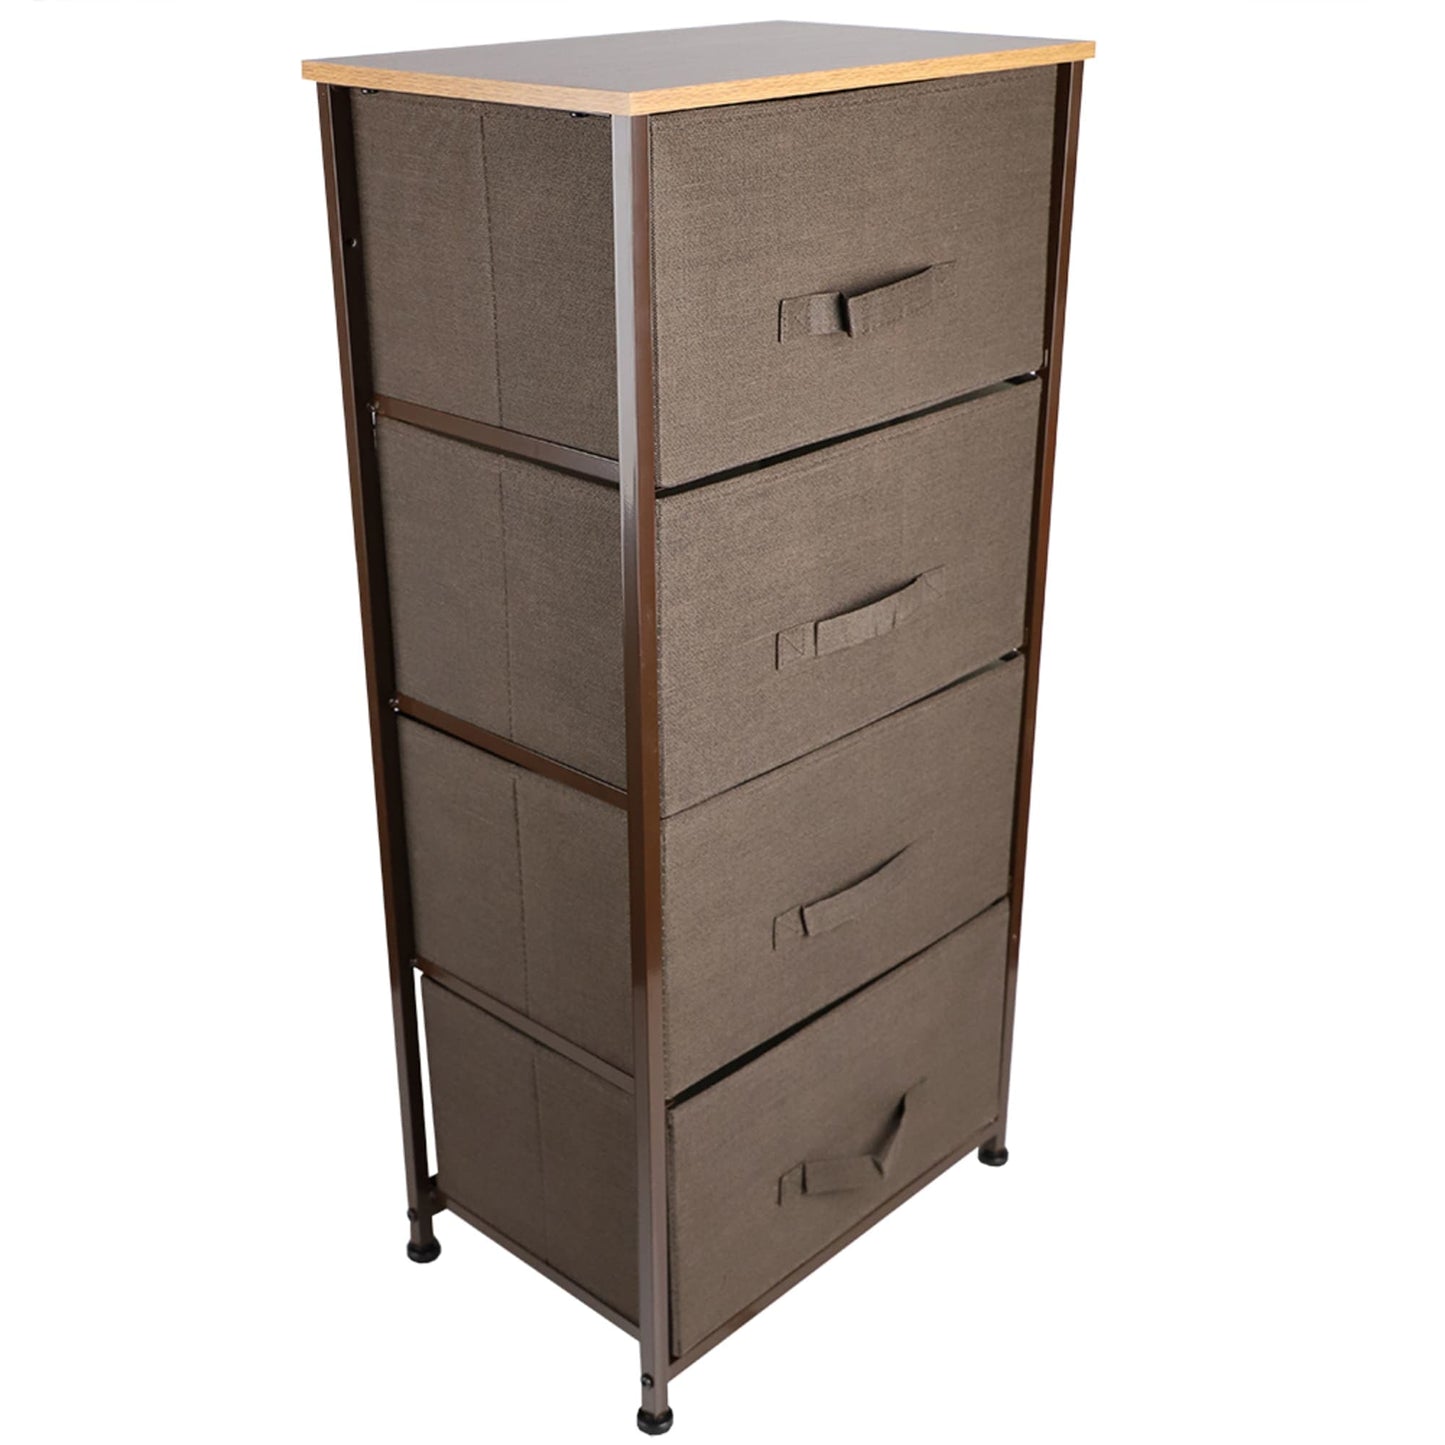 4 Drawer Storage Organizer, Brown